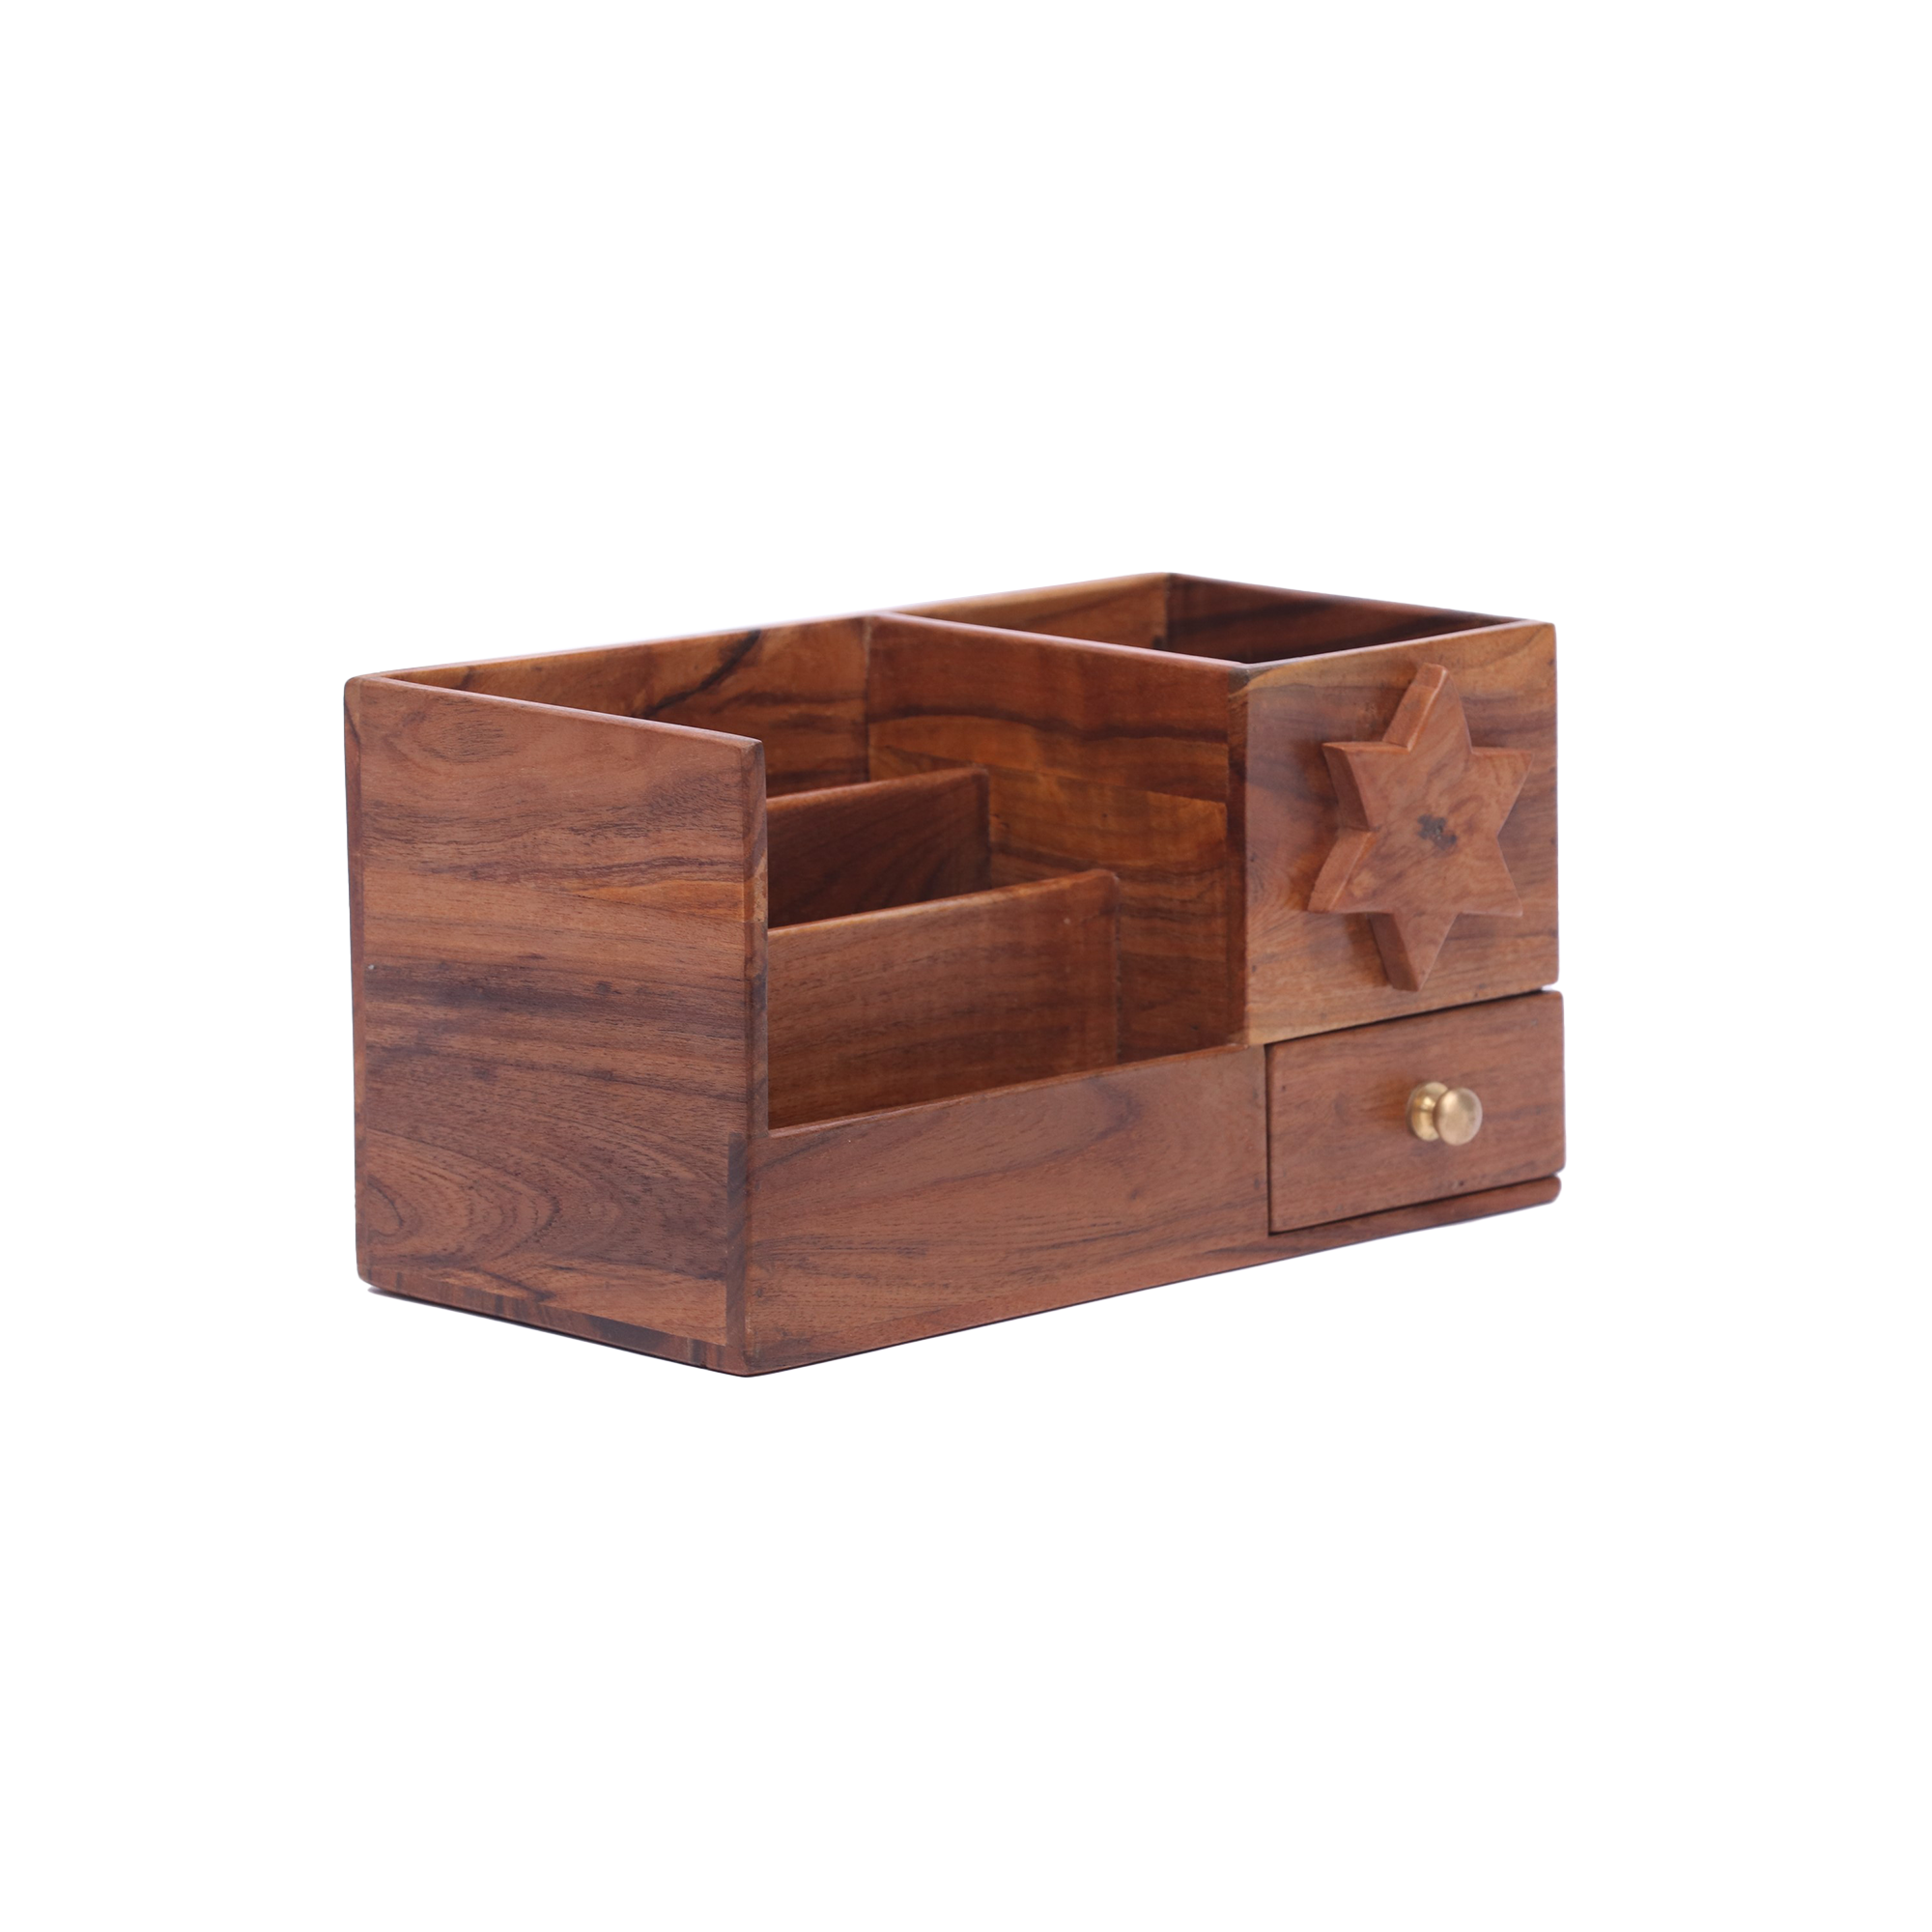 Wooden star box organizer with drawer Desk Organizer